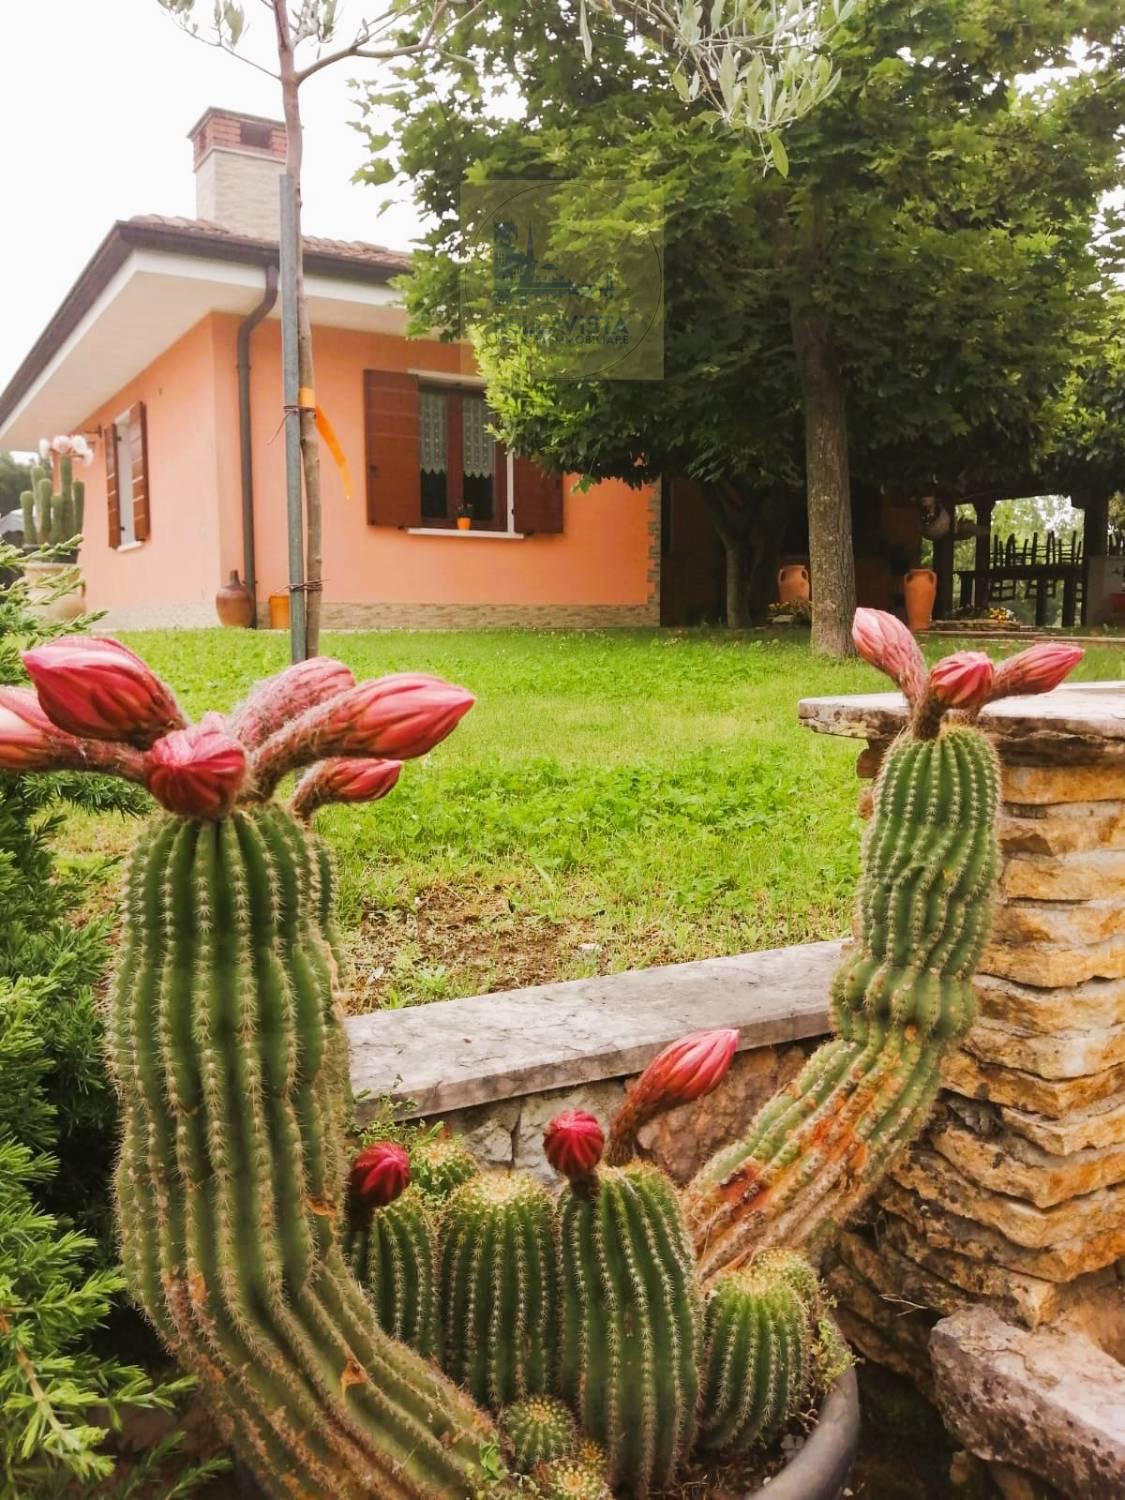 Villa Bifamiliare in vendita a Castel d'Ario, 14 locali, zona ro Urbano, prezzo € 1.450.000 | PortaleAgenzieImmobiliari.it